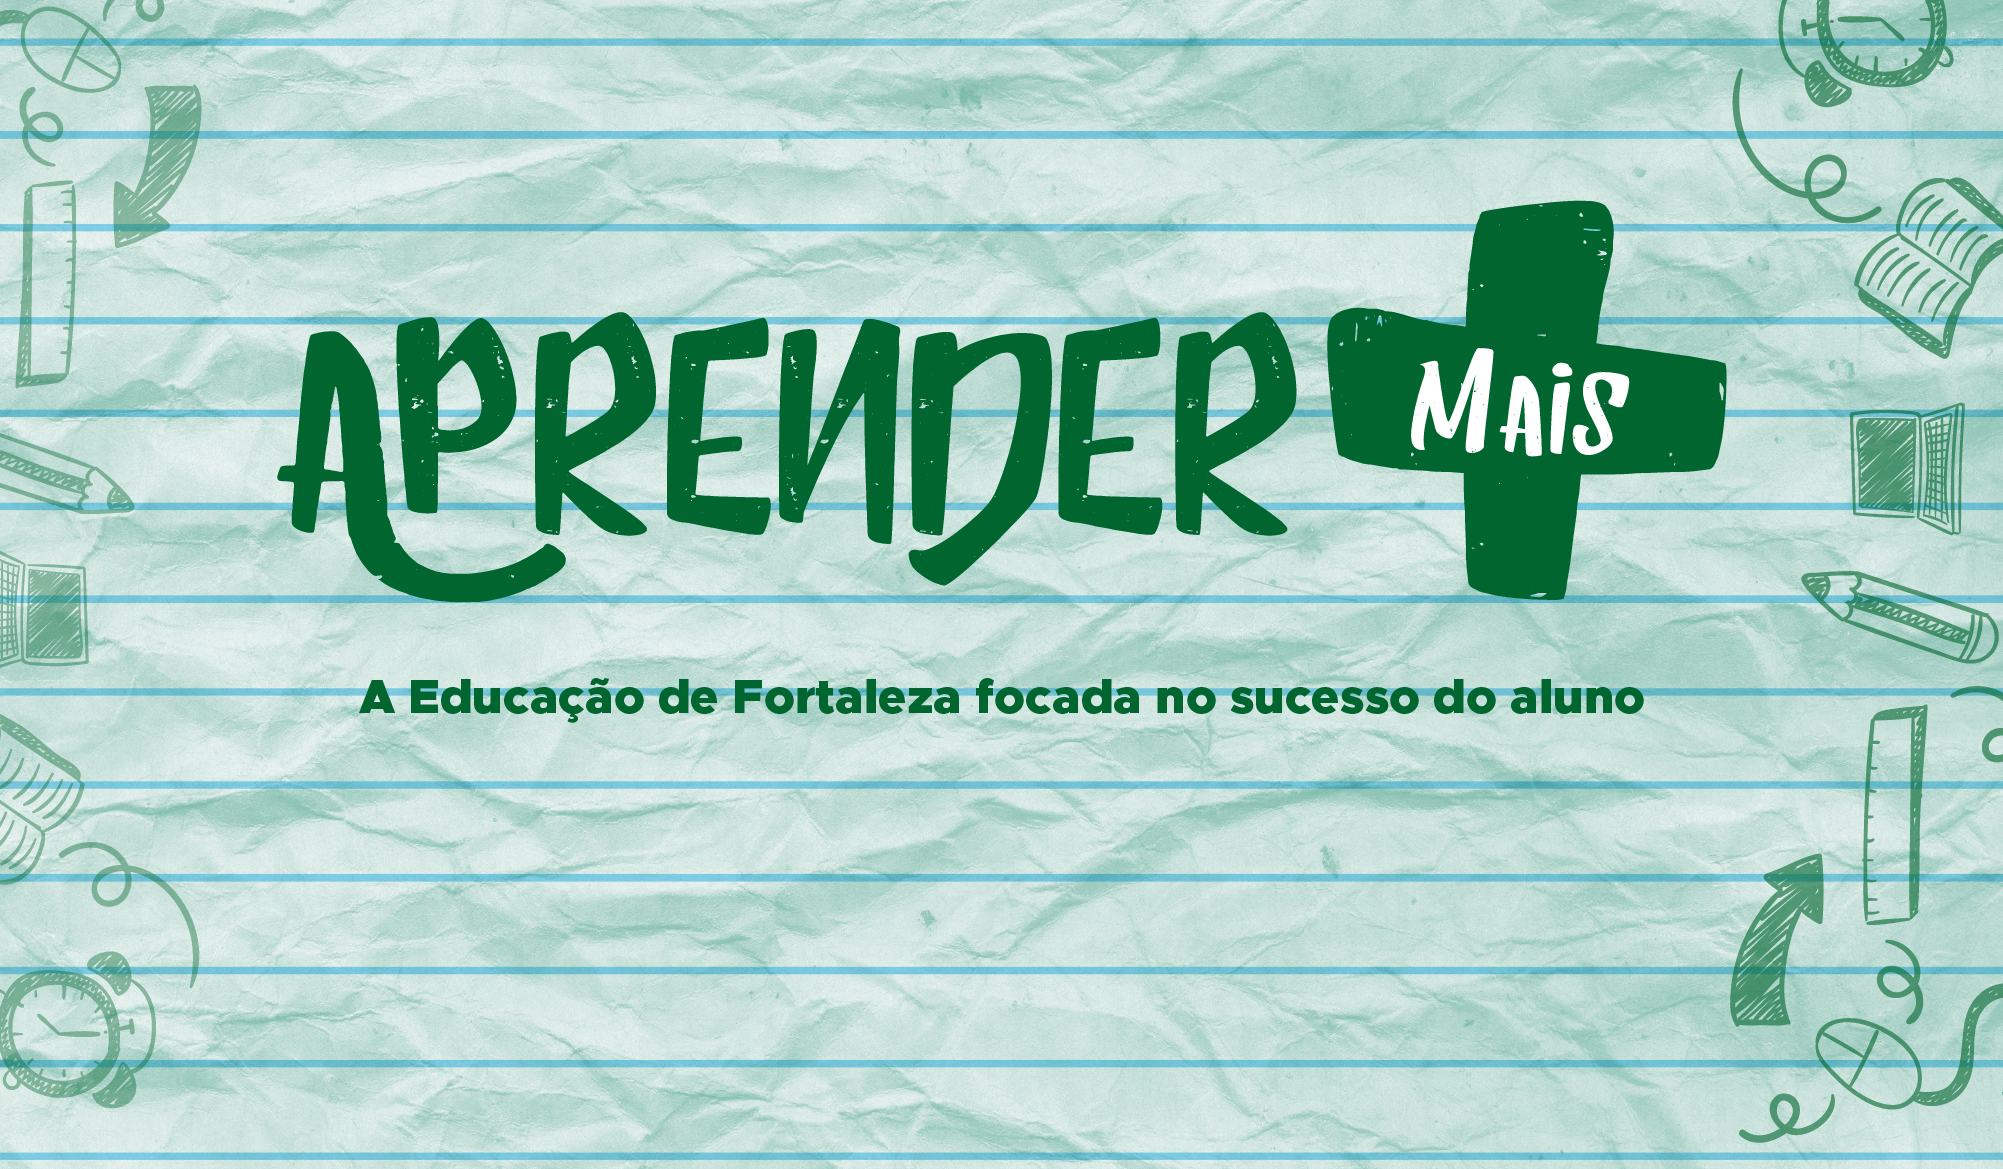 Imagem com fundo verde claro sob o texto Aprender Mais e subtítulo A educação de Fortaleza focada na educação do aluno